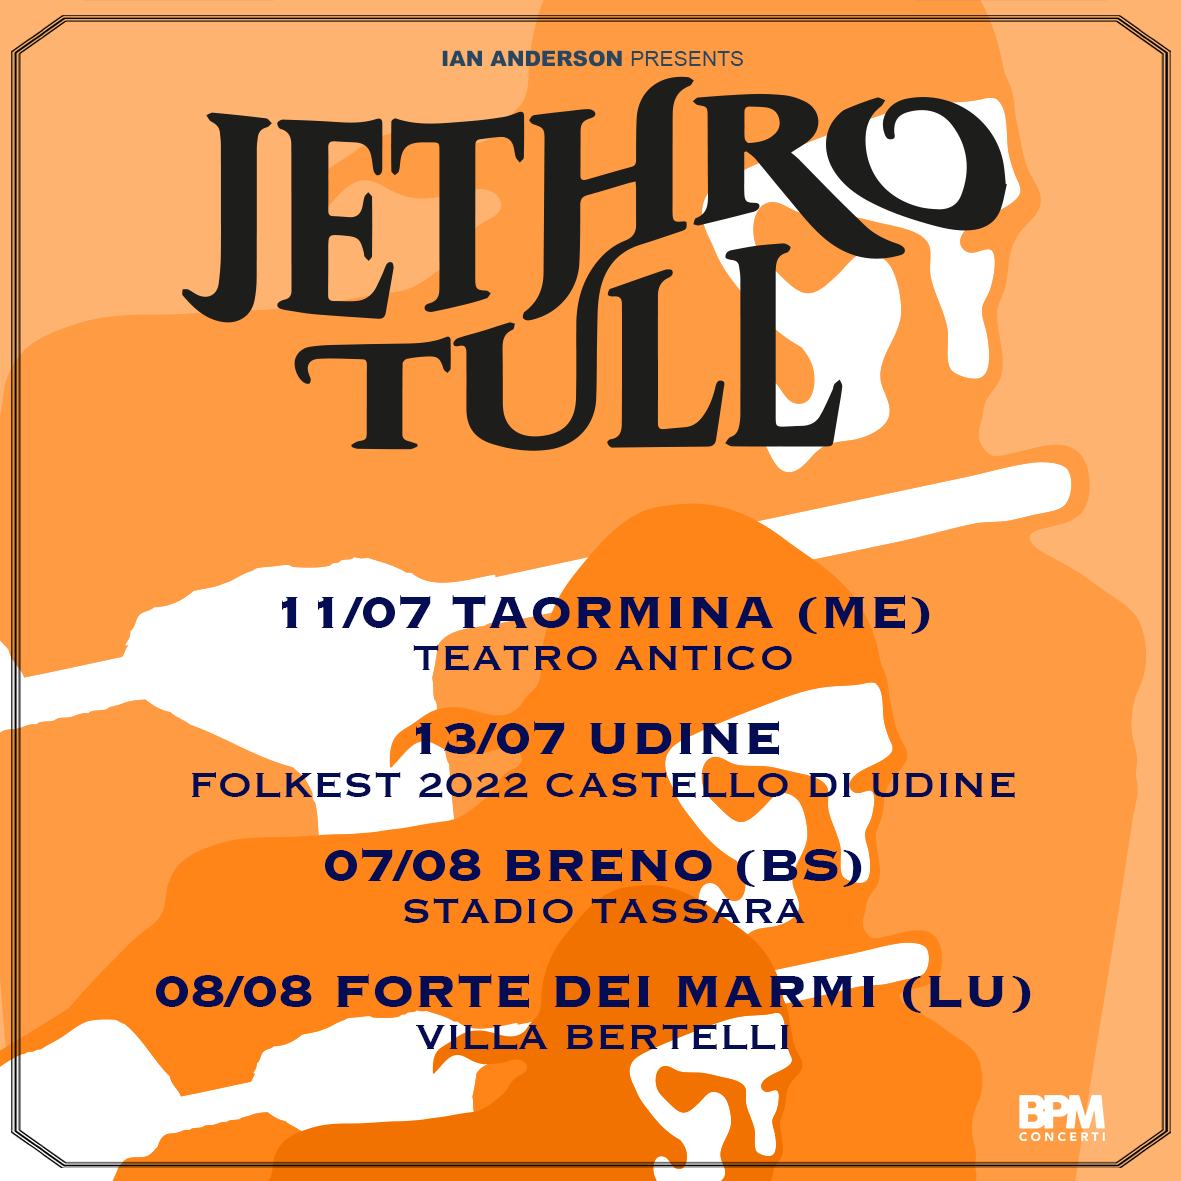 Jethro Tull 4 date in Italia